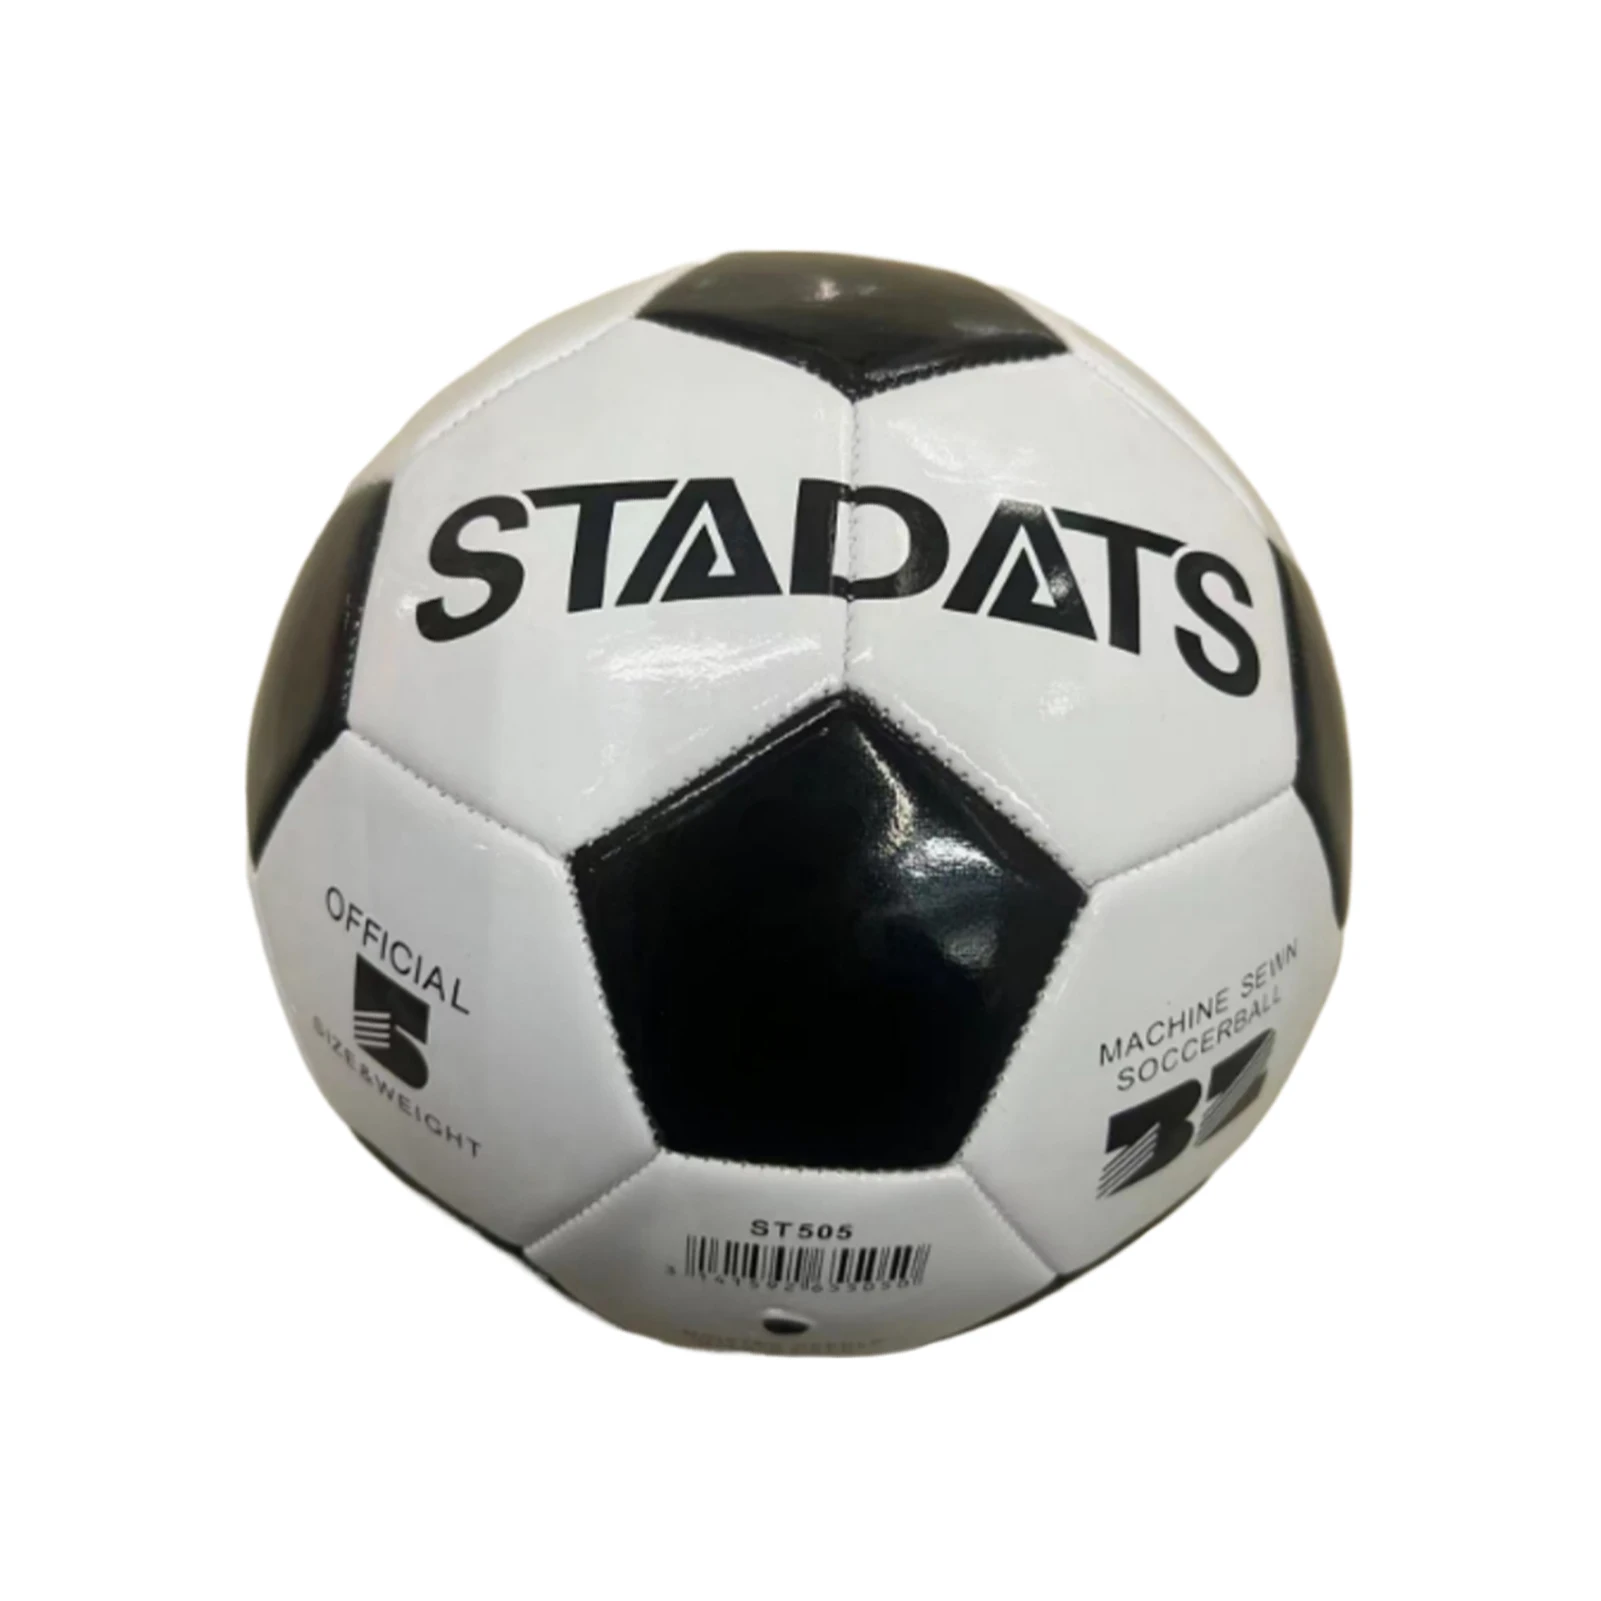 

Износостойкий футбольный мяч PU Grassland, широкое применение, высокая производительность для взрослых, Премиум полиуретан